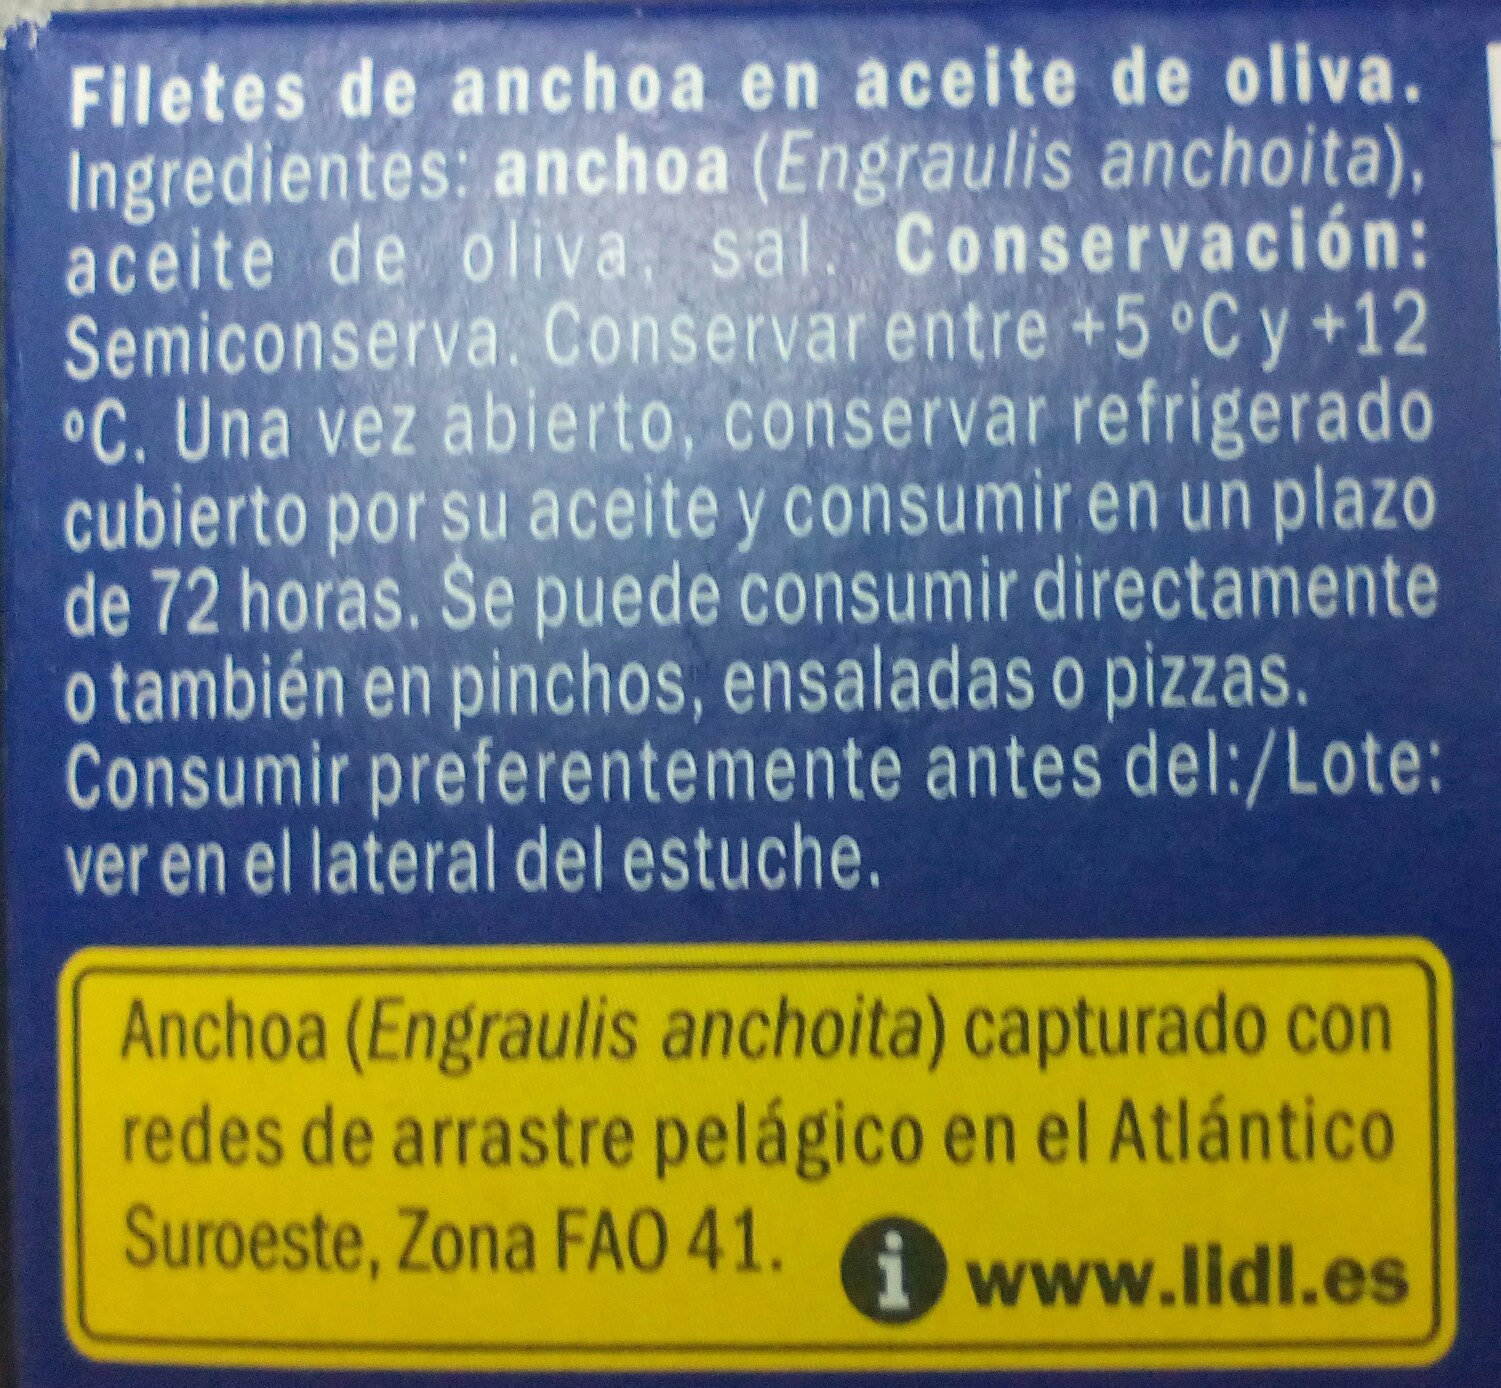 Filetes de anchoa en aceite de oliva - Ingredients - es